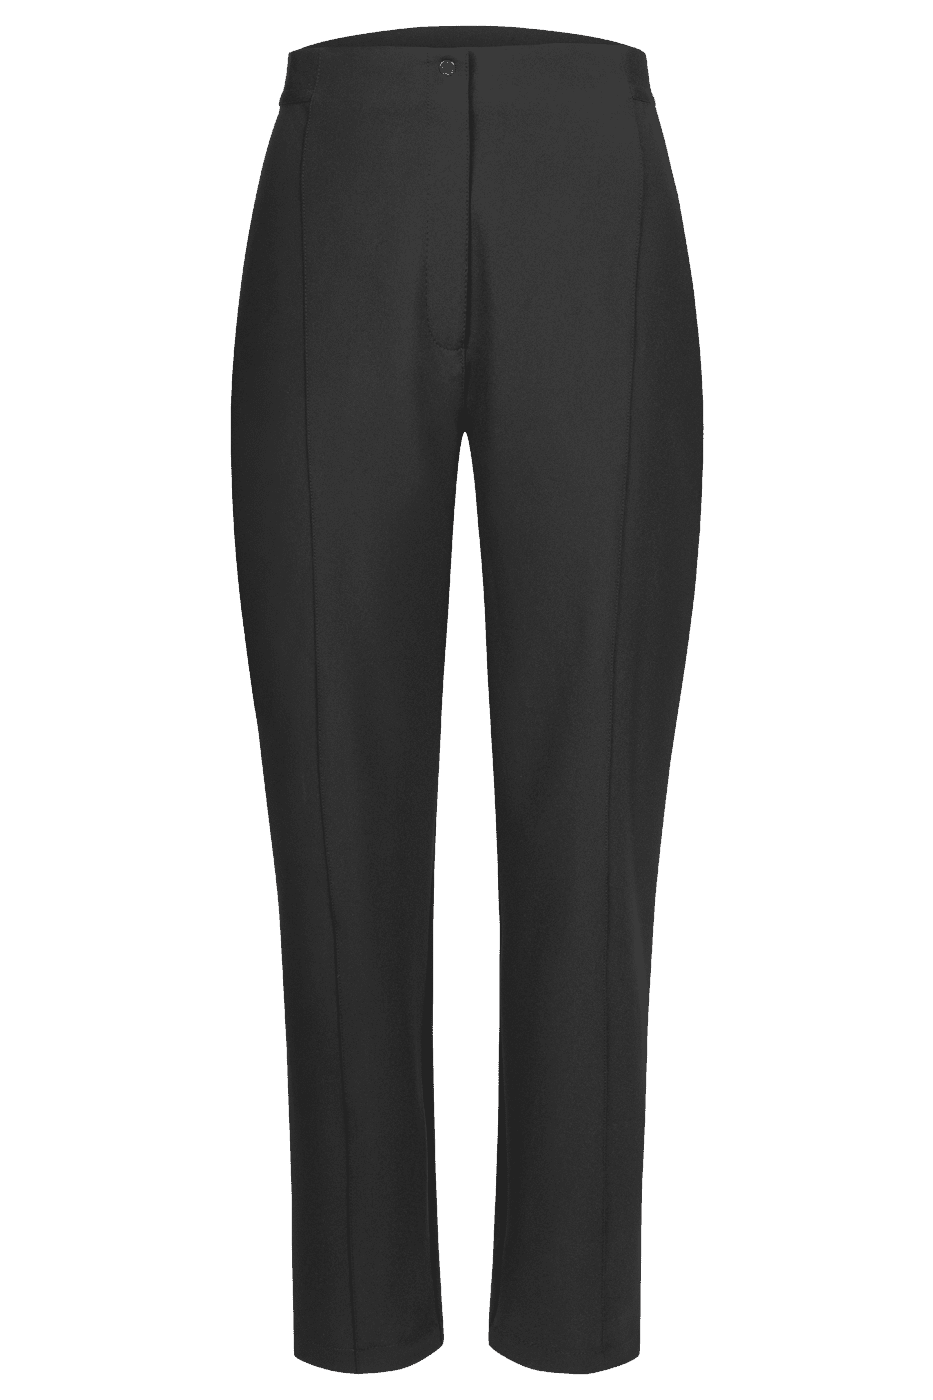 MALI PANTS in Black 08-Pant-Annette Gortz-Debs Boutique